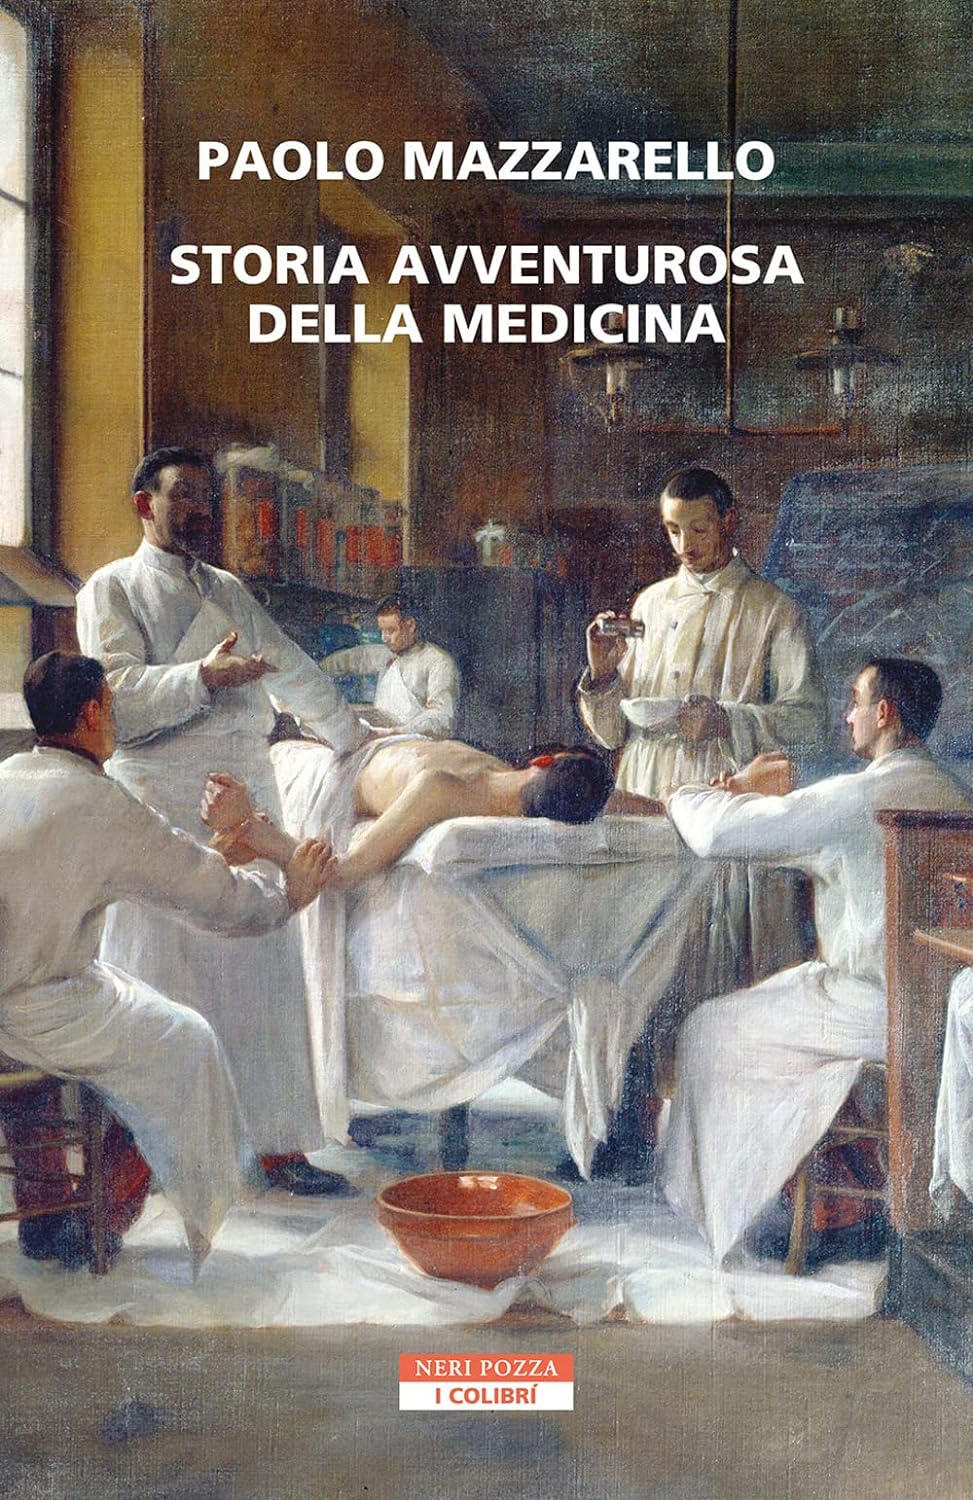 Ospedale: lunedì 20 maggio alle 17.30 si presenta <br/> il libro “Storia avventurosa della medicina”